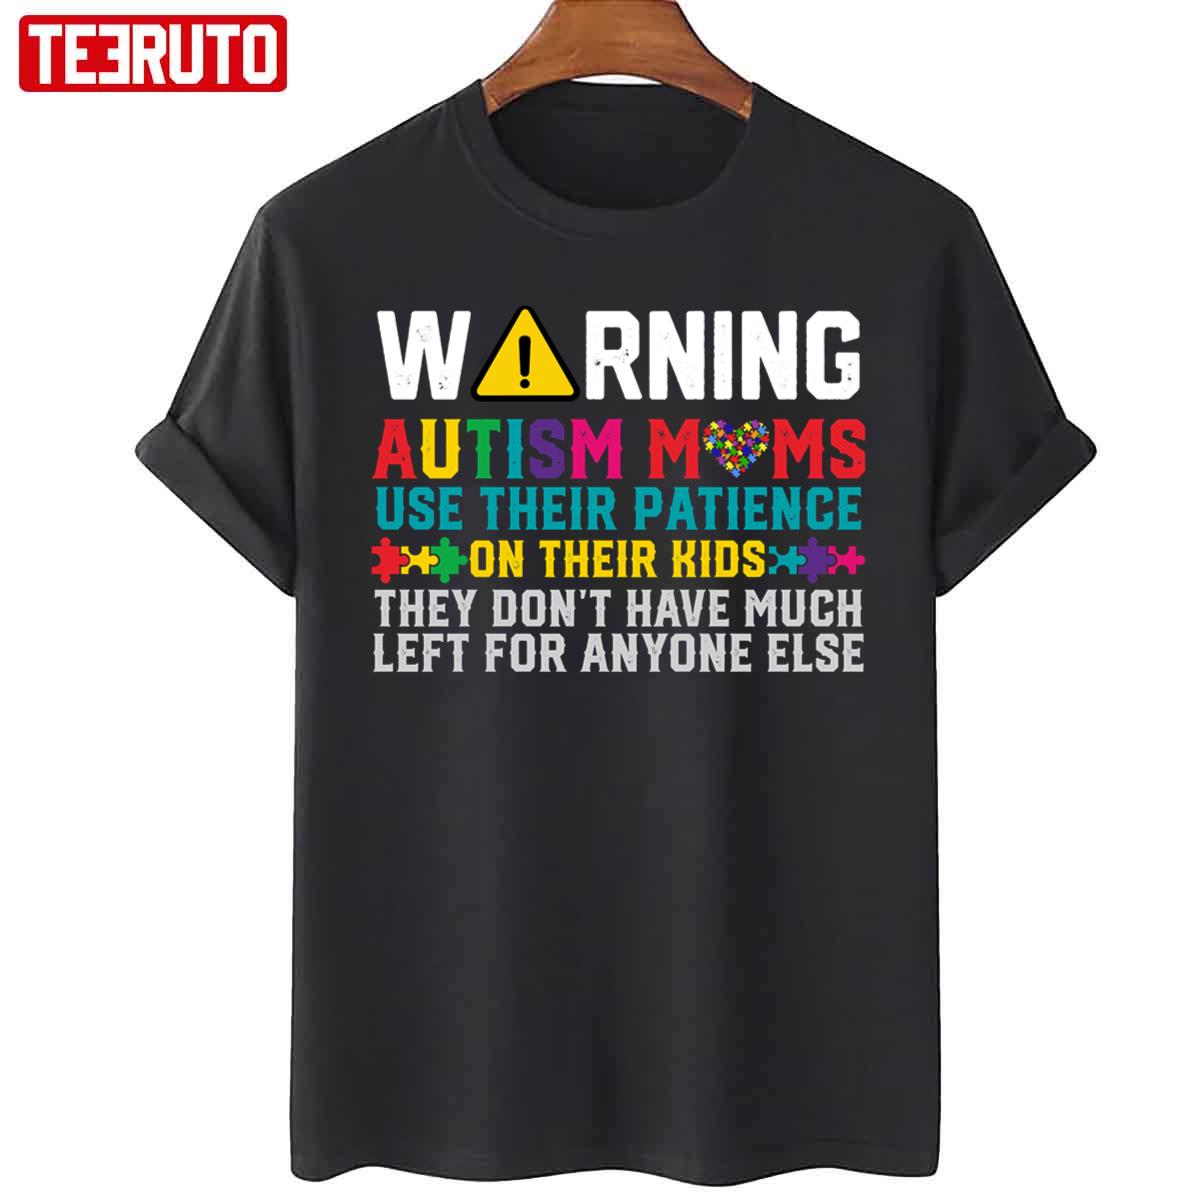 Warning Autism Momawareness Day Unisex Sweatshirt